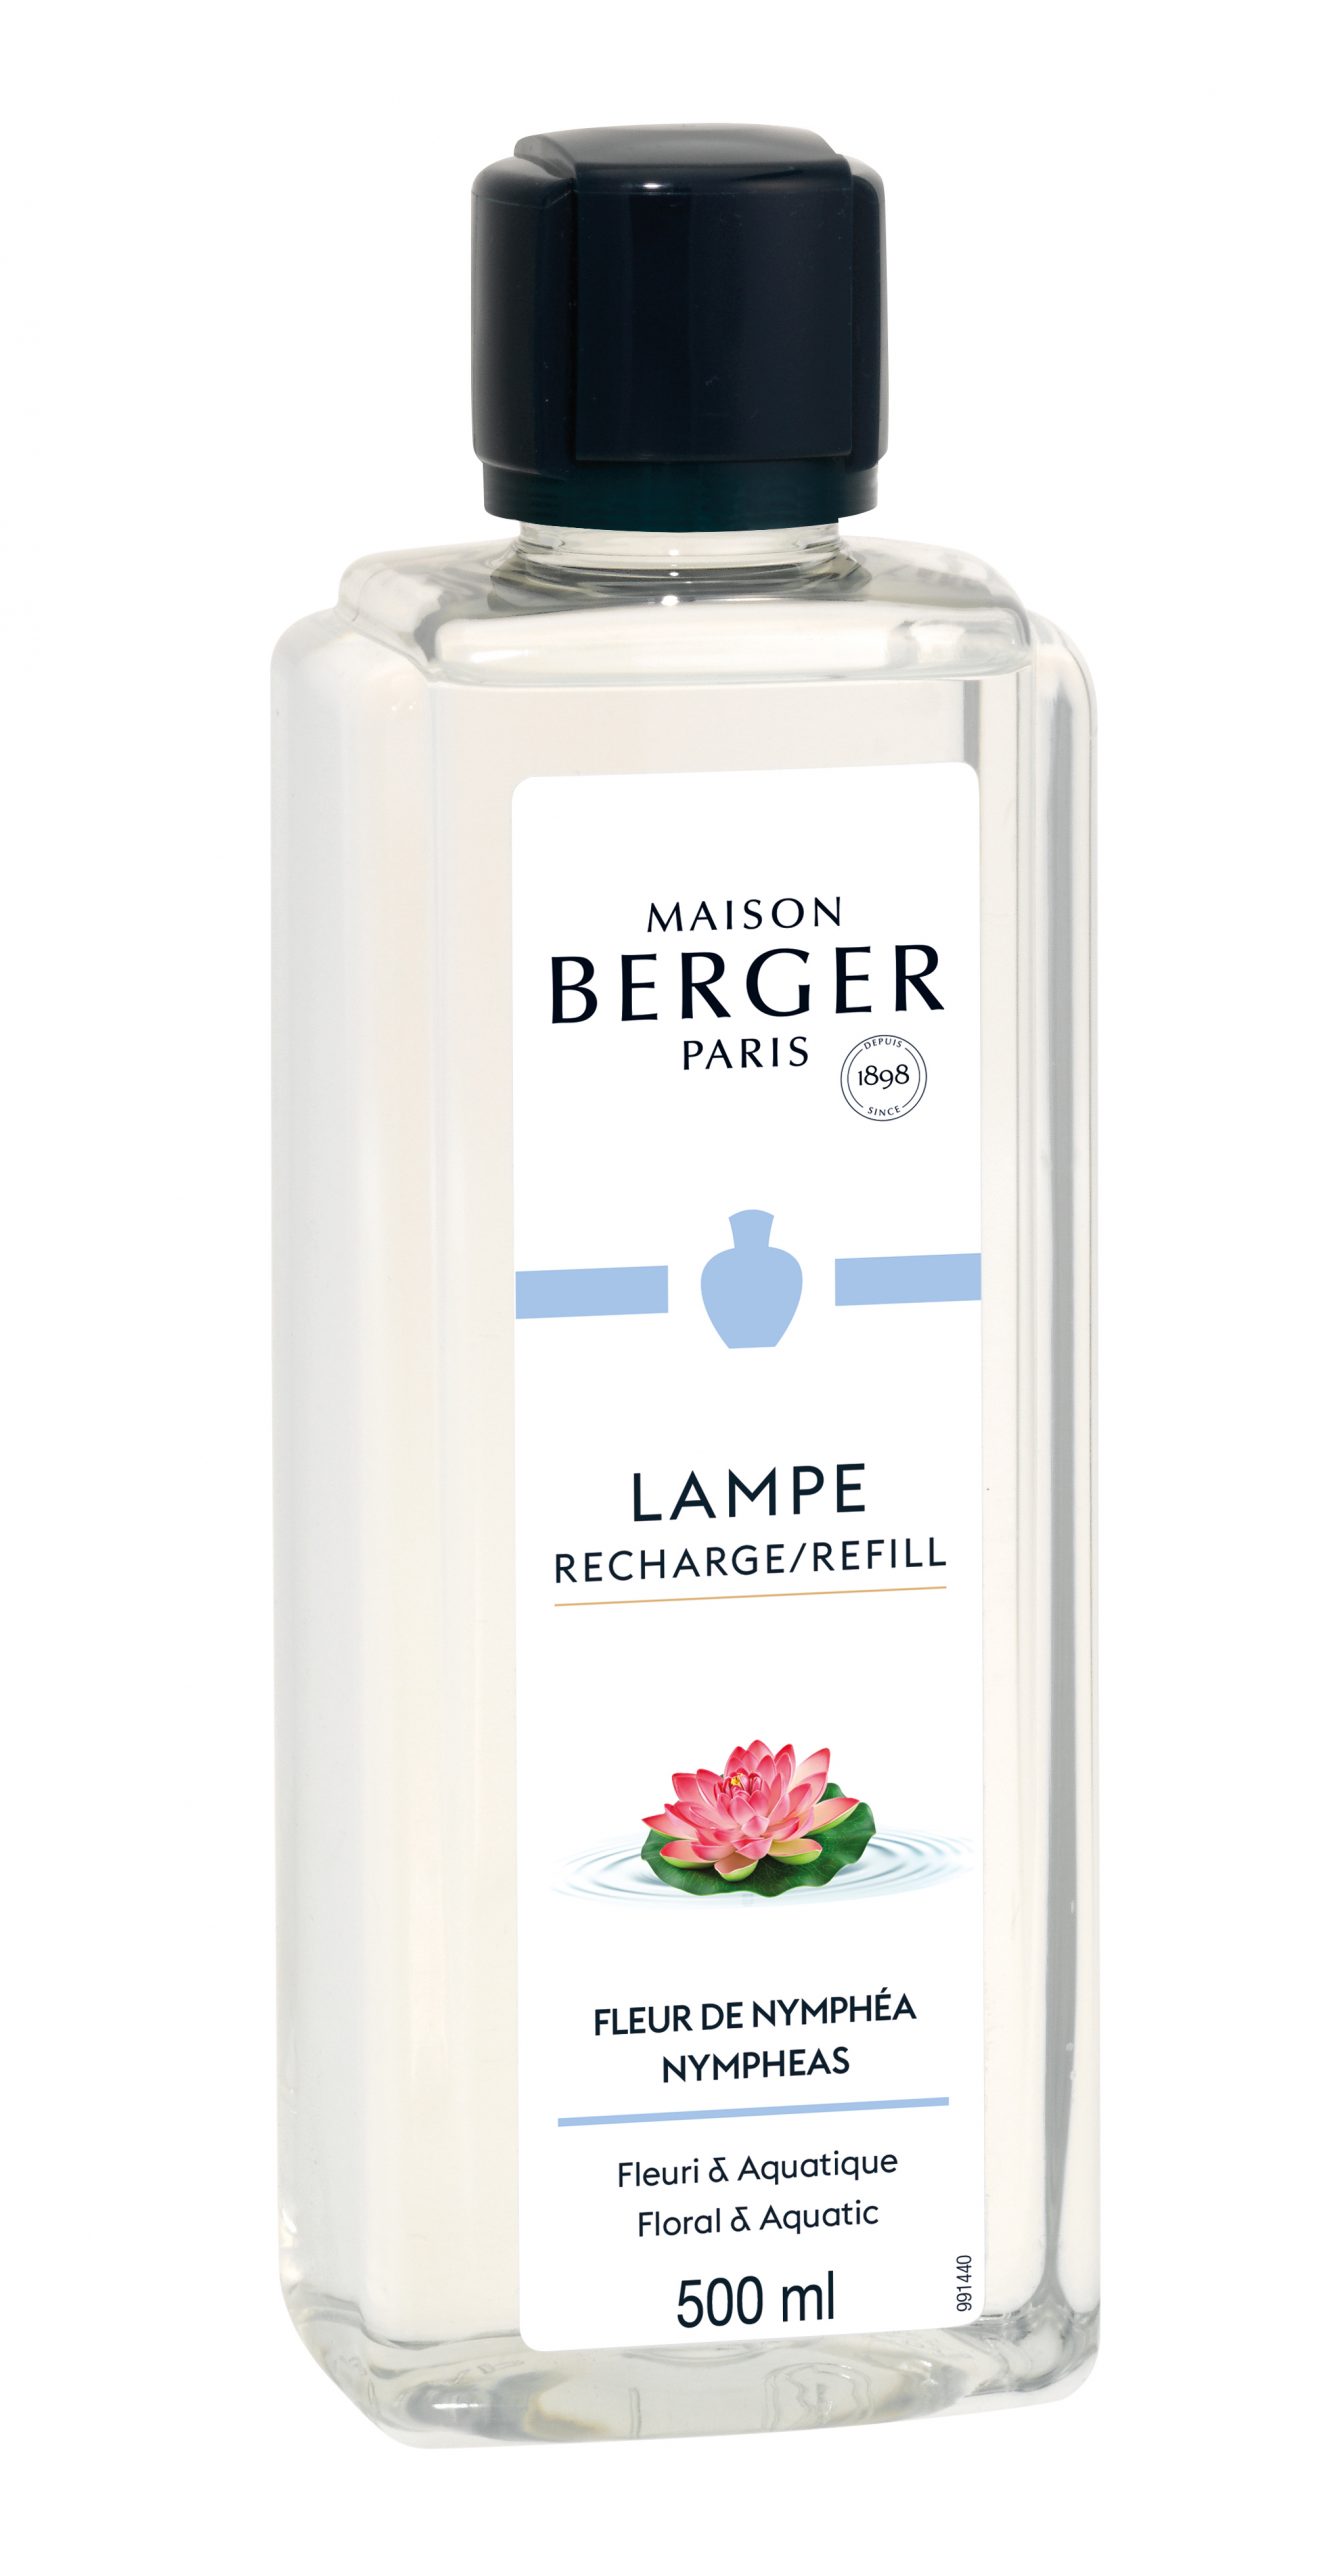 Maison Berger Paris - parfum Fleur de Nymphe - 500 ml